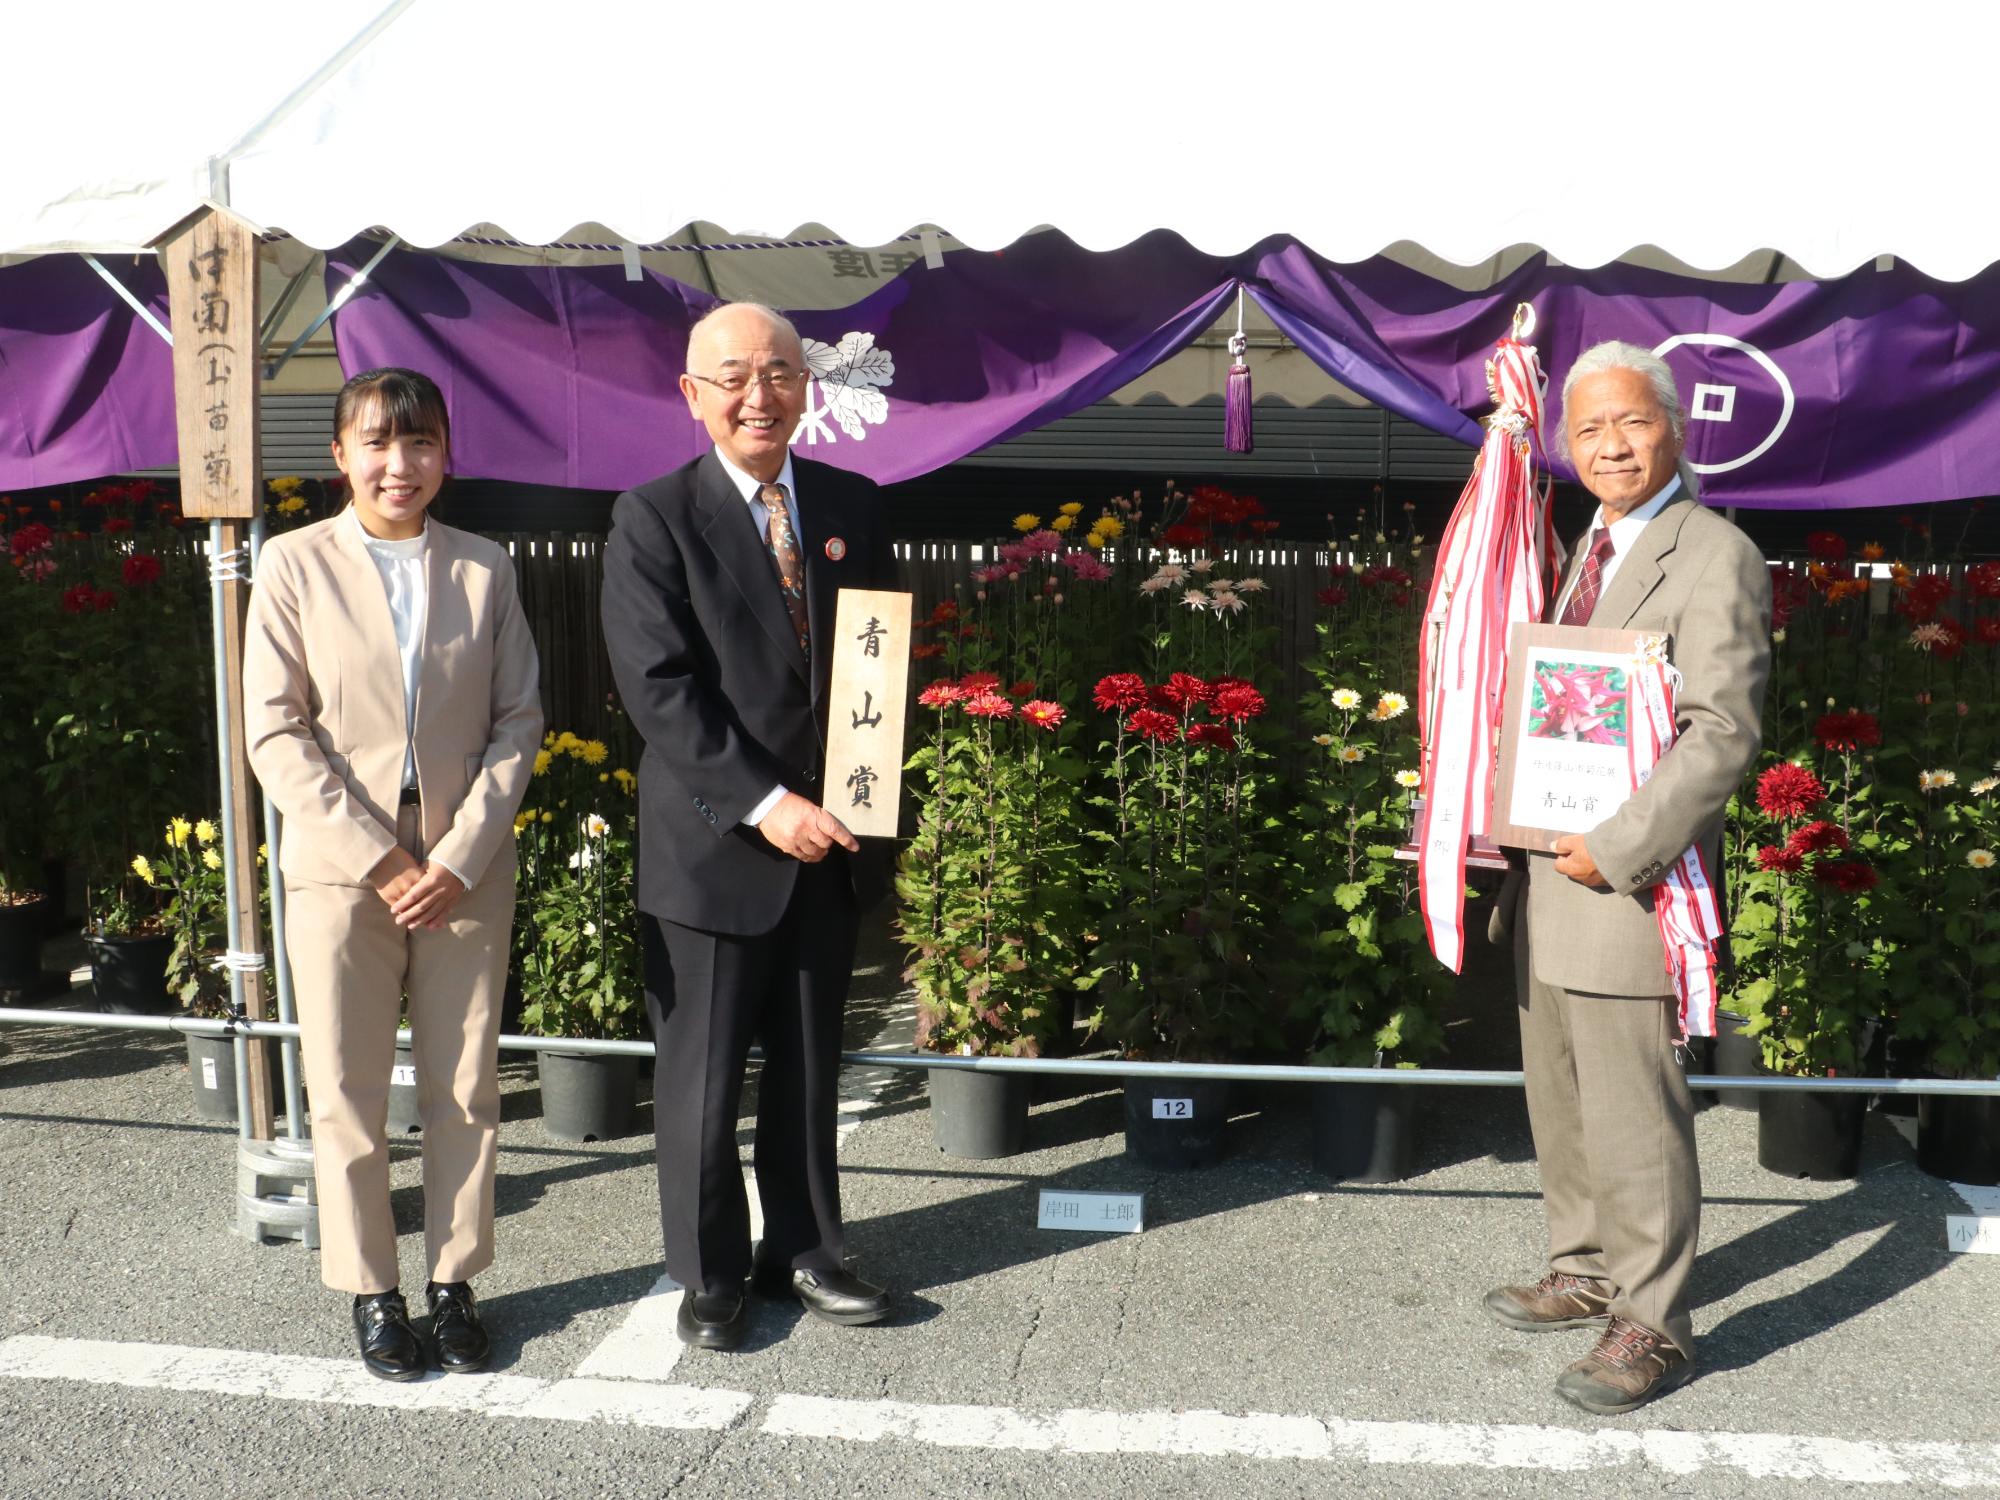 菊花展で、市長が青山賞のプレートを持ち、右隣で受賞者が青山賞の盾とトロフィーを抱えている、左隣にほかの受賞者が立っている